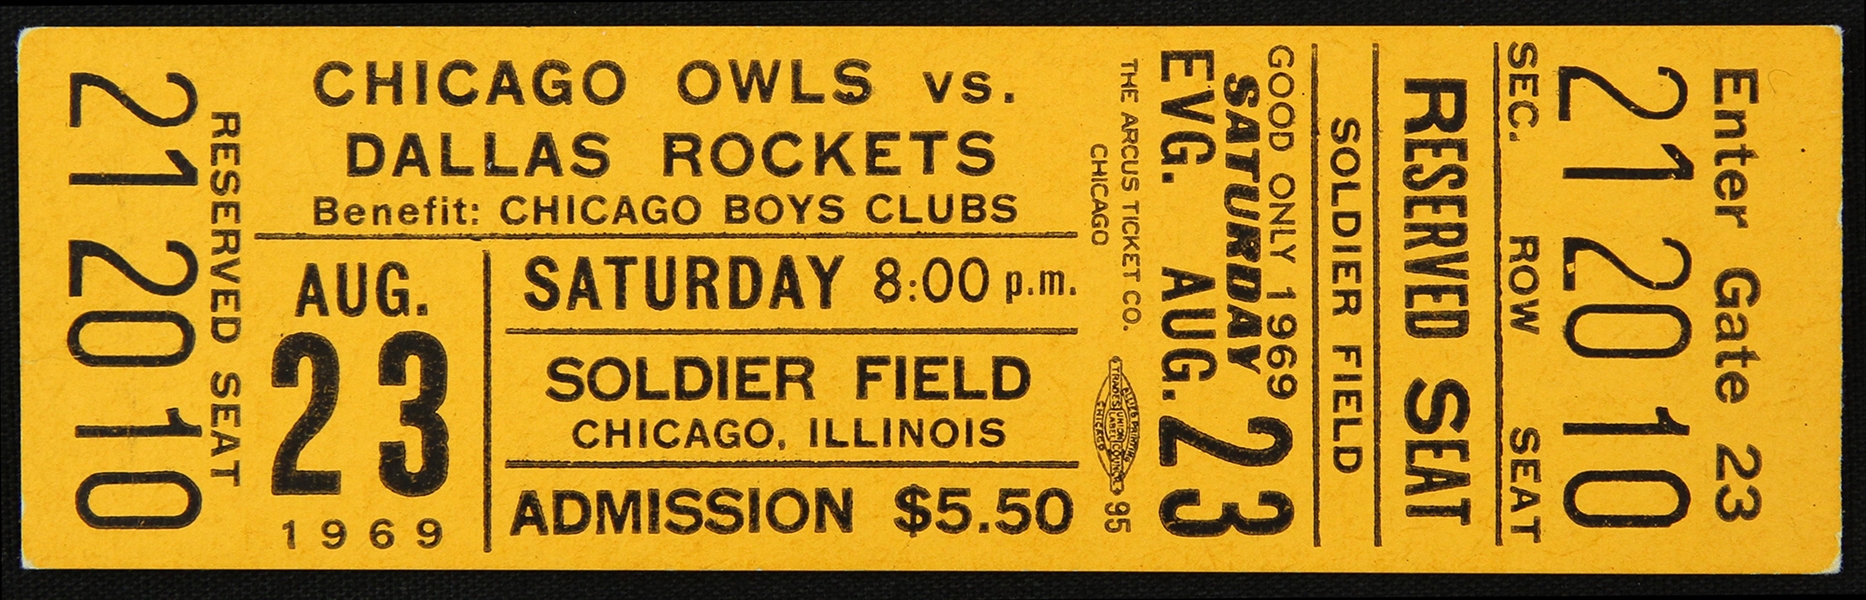 1969 Chicago Owls vs Dallas Rockets Full Ticket